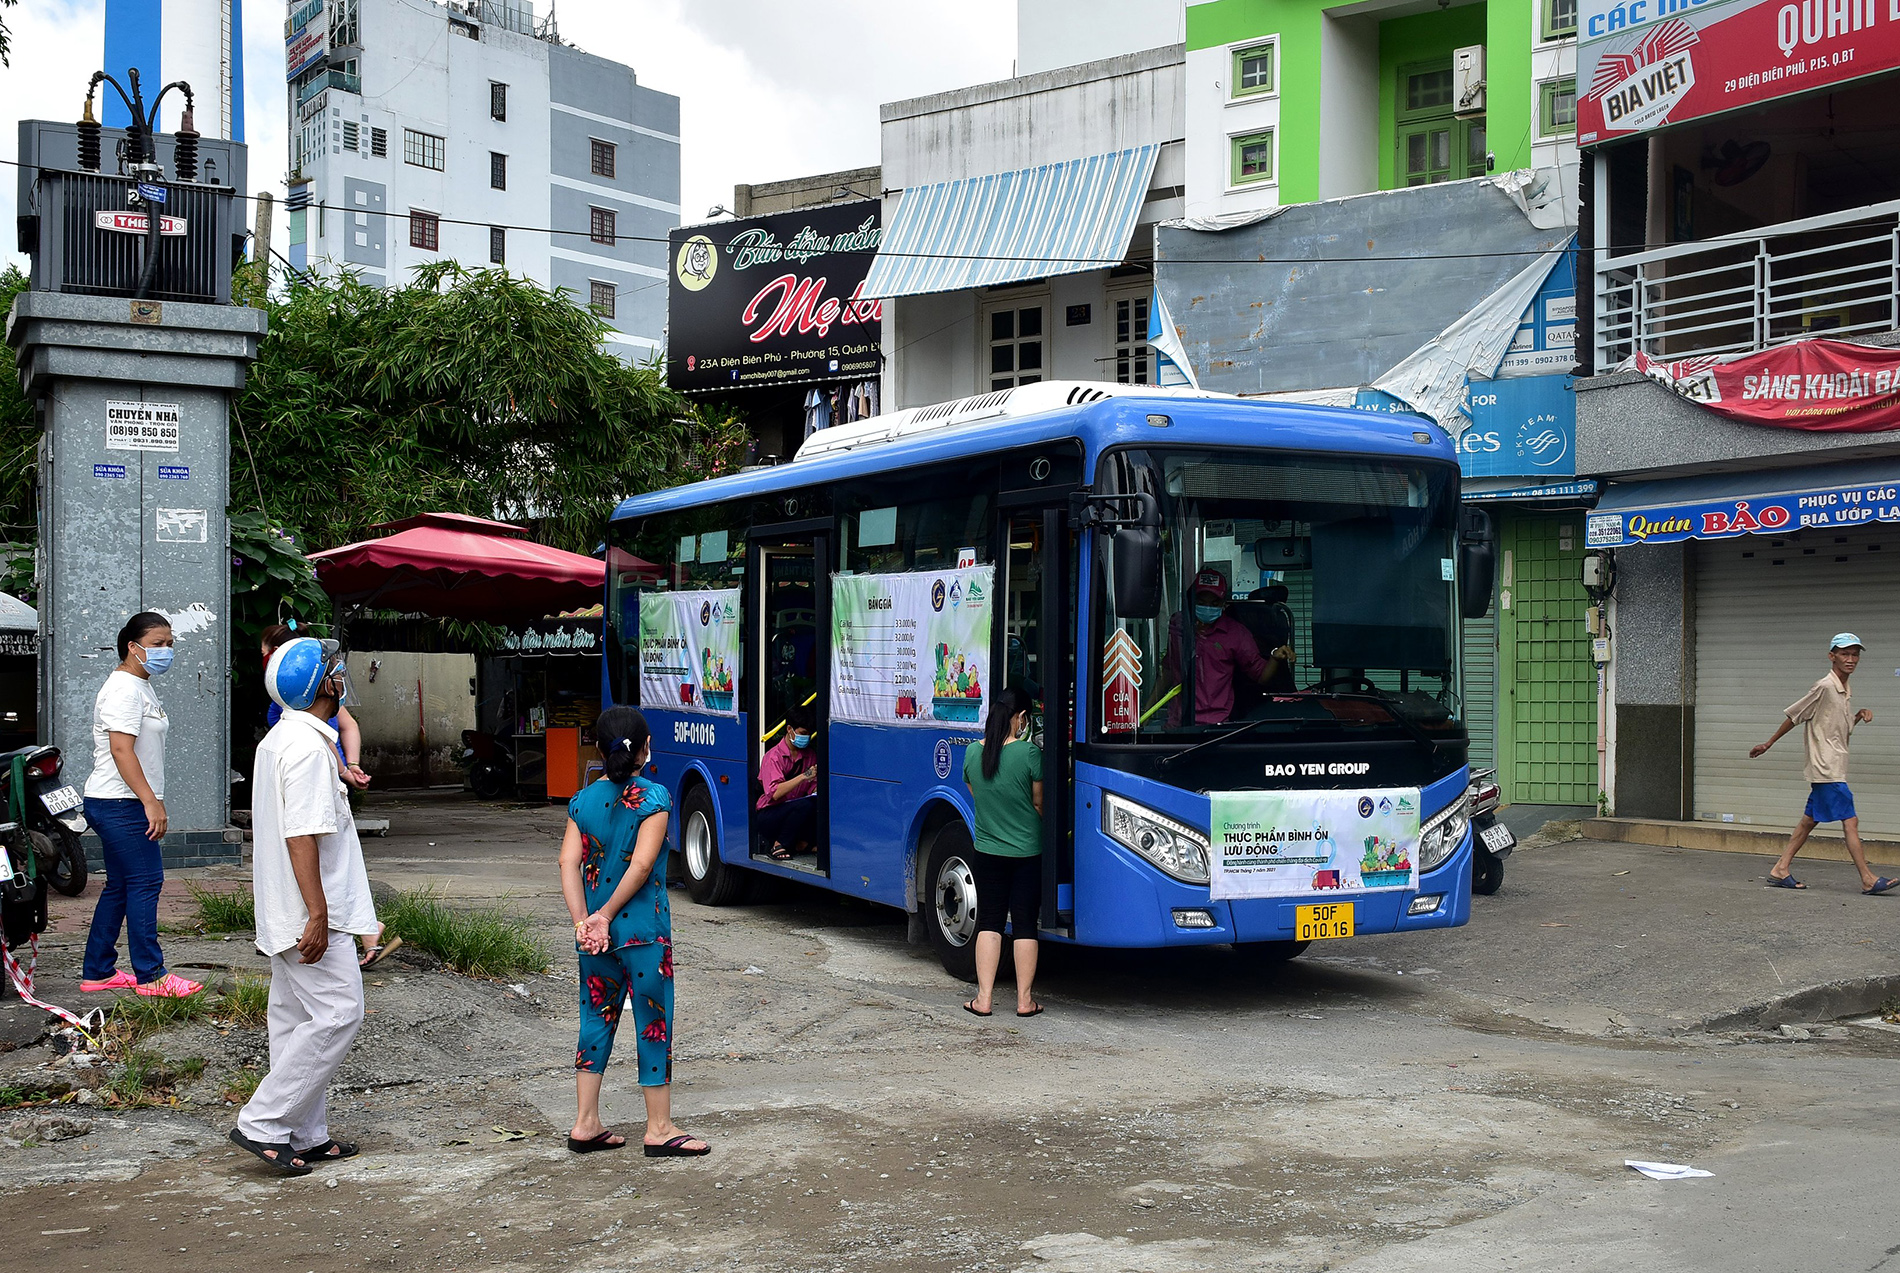 2 chiếc xe buýt vừa được Sở Công thương TP.HCM phối hợp với một doanh nghiệp chuyển đổi công năng thành cửa hàng di động chở rau củ giá bình ổn đến các quận, huyện trên địa bàn thành phố bán cho người dân.